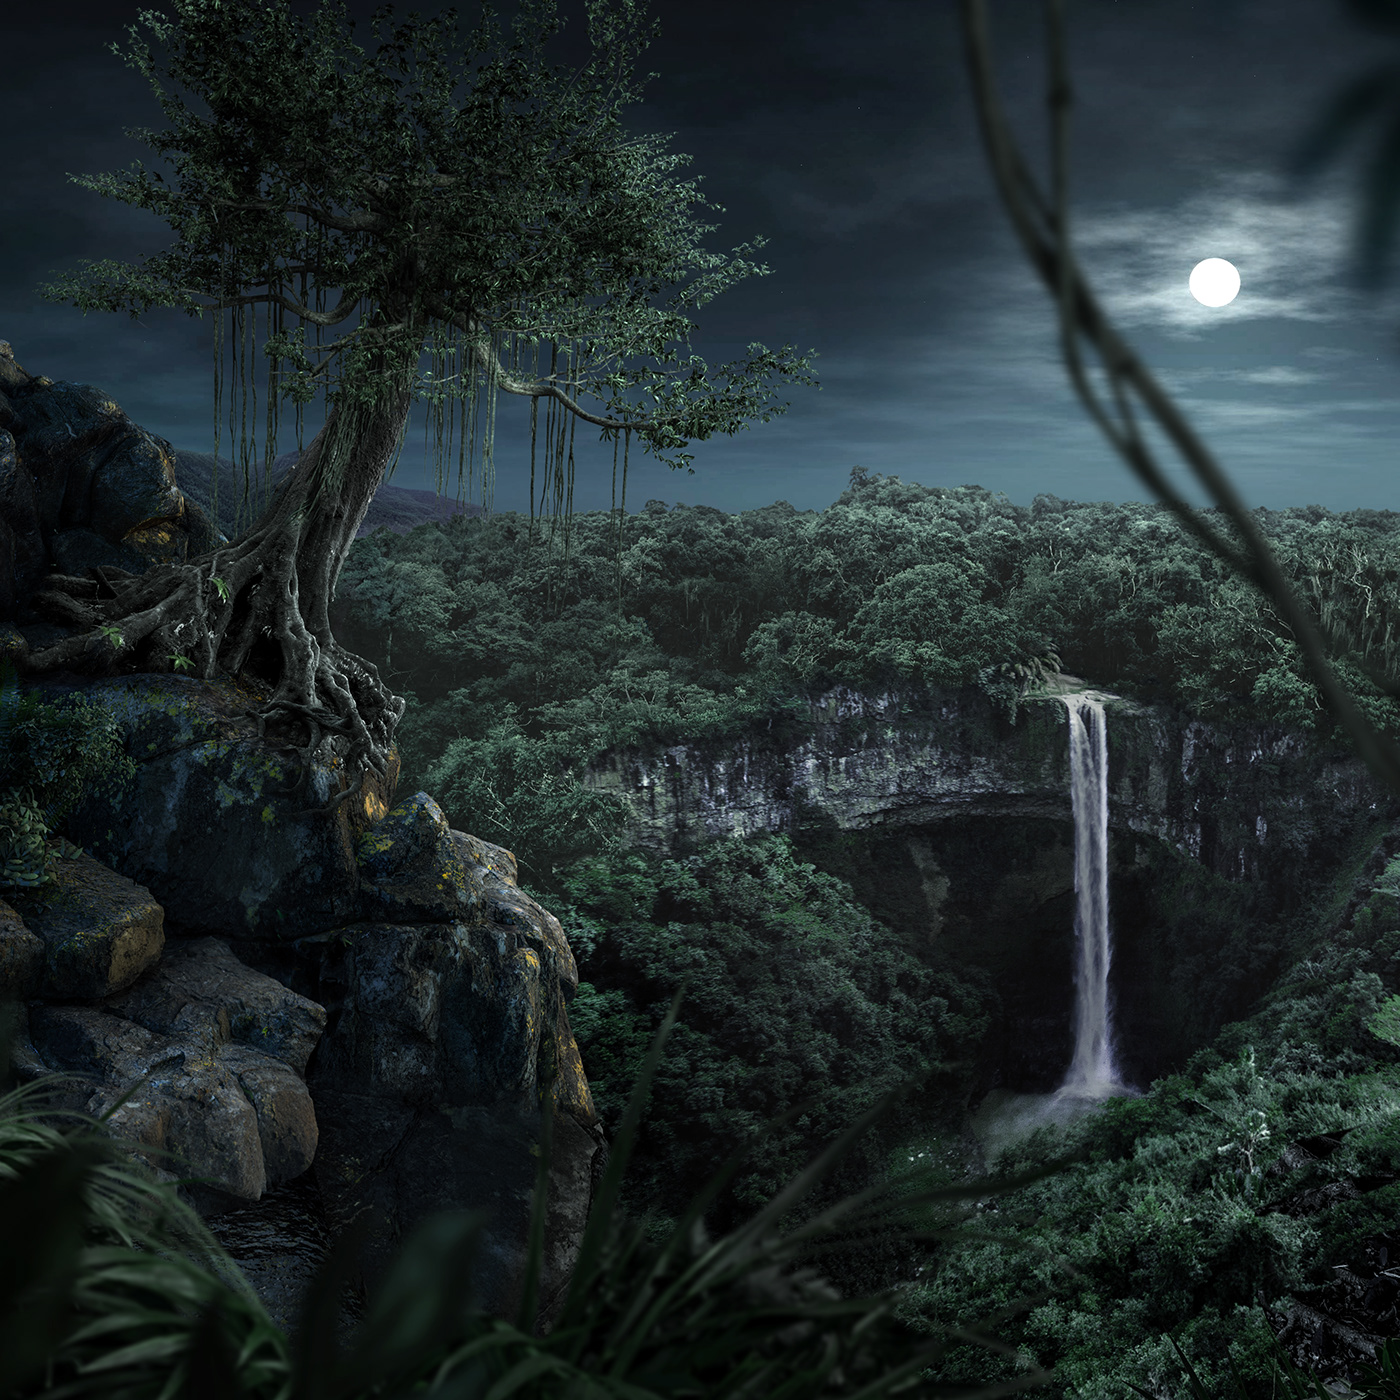 jungle CGI 3D Photography  Netflix mowgli retouch retouching  ADV Advertising 